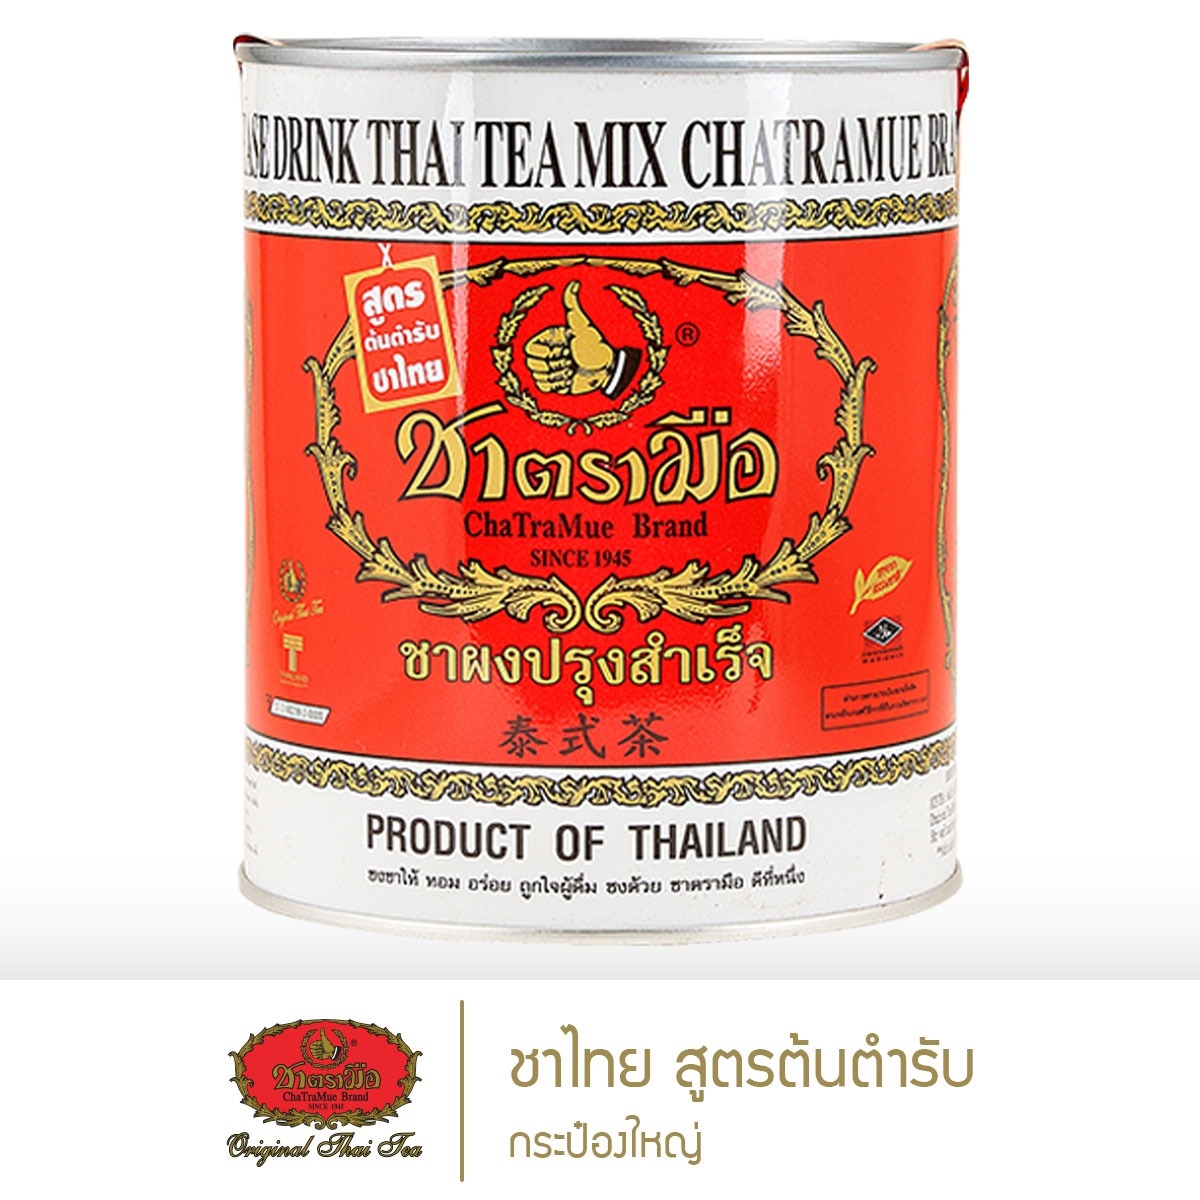 ชาตรามือ ชาไทยสูตรต้นตำรับ กระป๋องใหญ่ 450 กรัม (THAI TEA MIX ORIGINAL - BIG CAN PACK 450 G.)